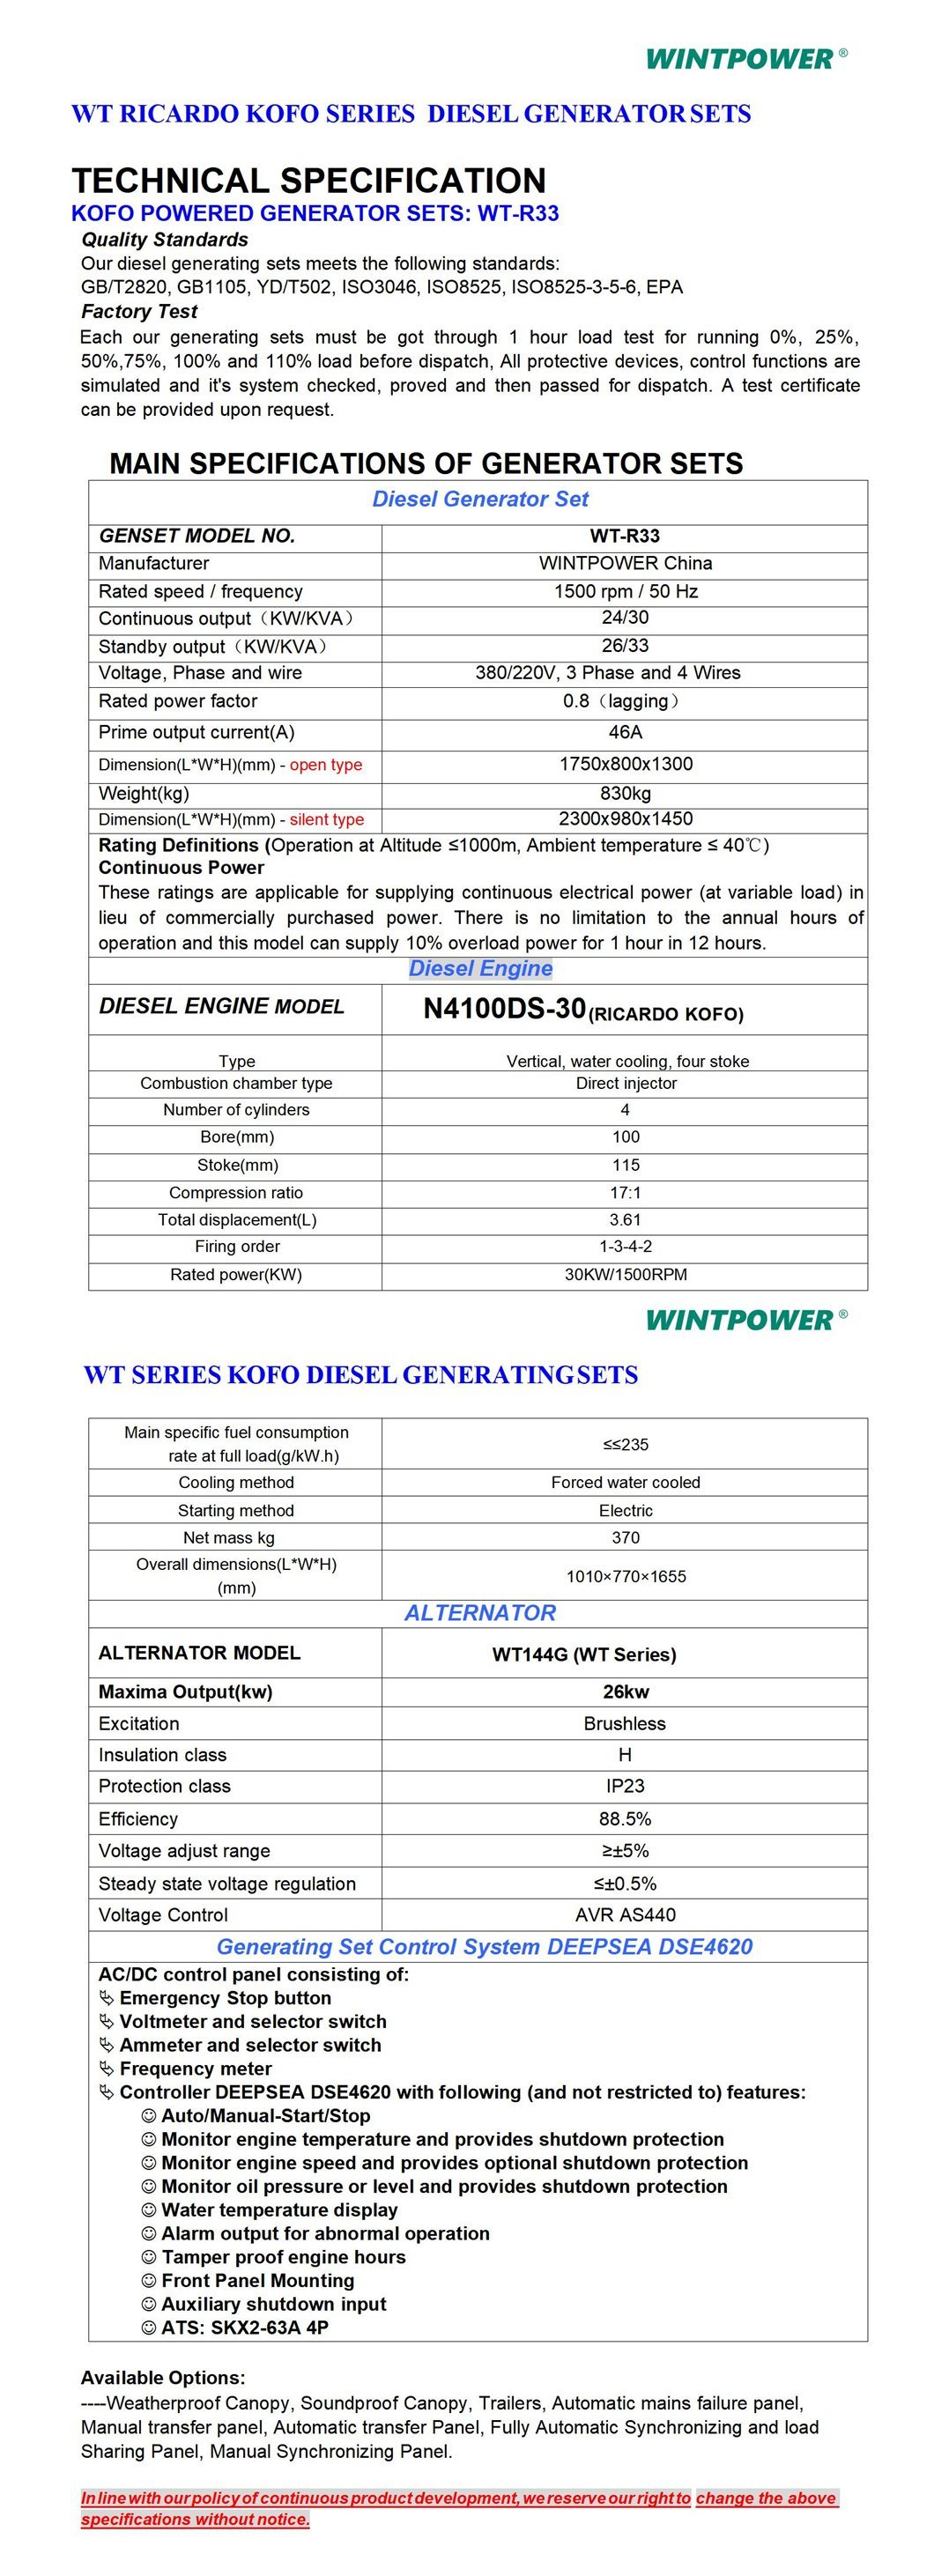 Weichai Kofo Ricardo Diesel Engine Power Generator Set Dg Genset 440kVA Wt13-360de Ljudisolerad Tyst typ 400/230V 380/220V 208/110V 440V 480V 600V 50Hz 60Hz